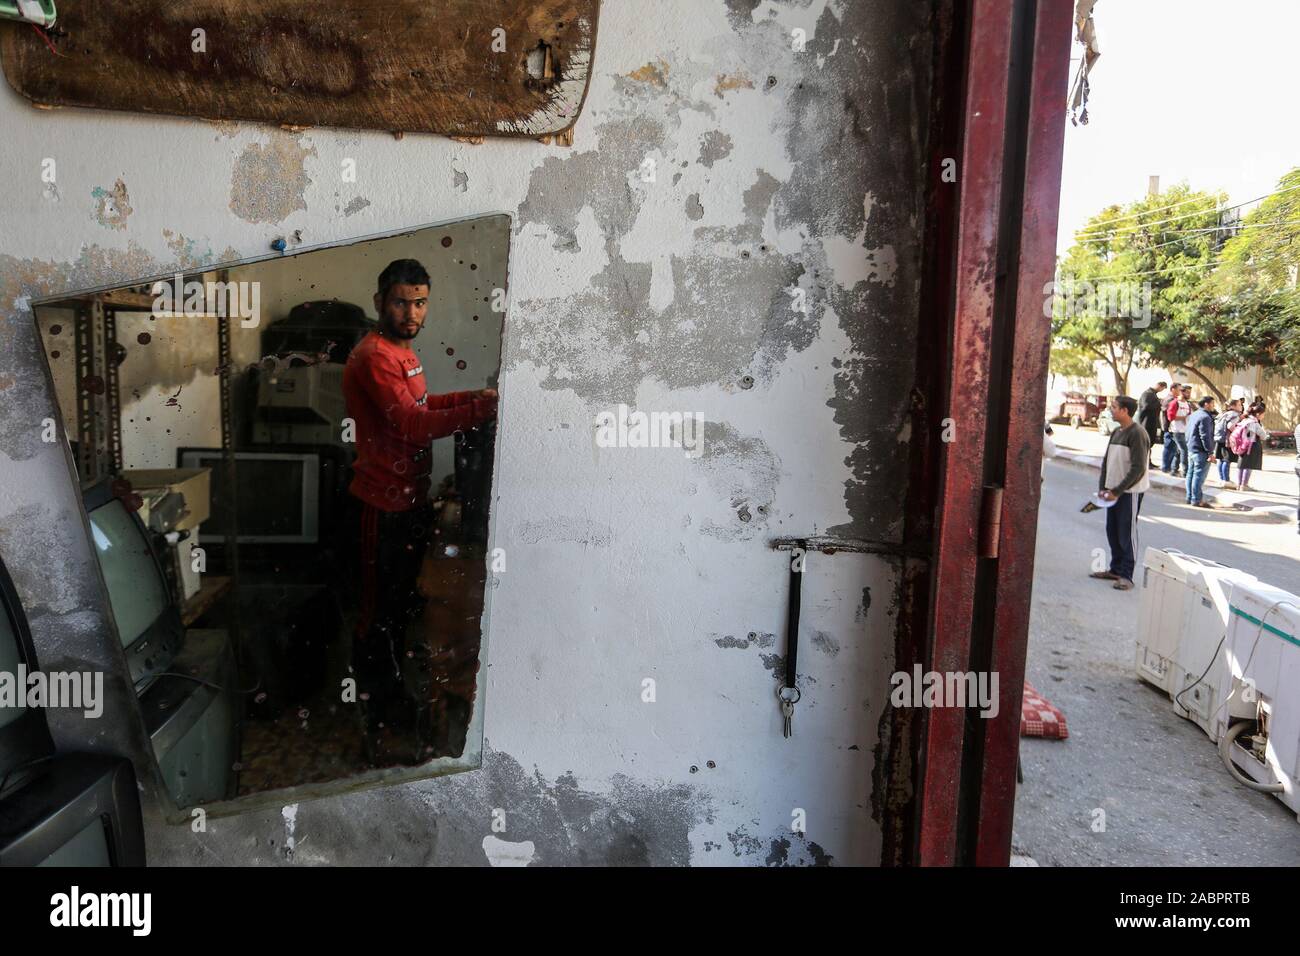 Un uomo palestinese la riparazione di elettrodomestici di fronte al suo negozio di Khan Younis, sud della striscia di Gaza, il Nov 28, 2019. Foto di Abed Rahim Khatib Foto Stock